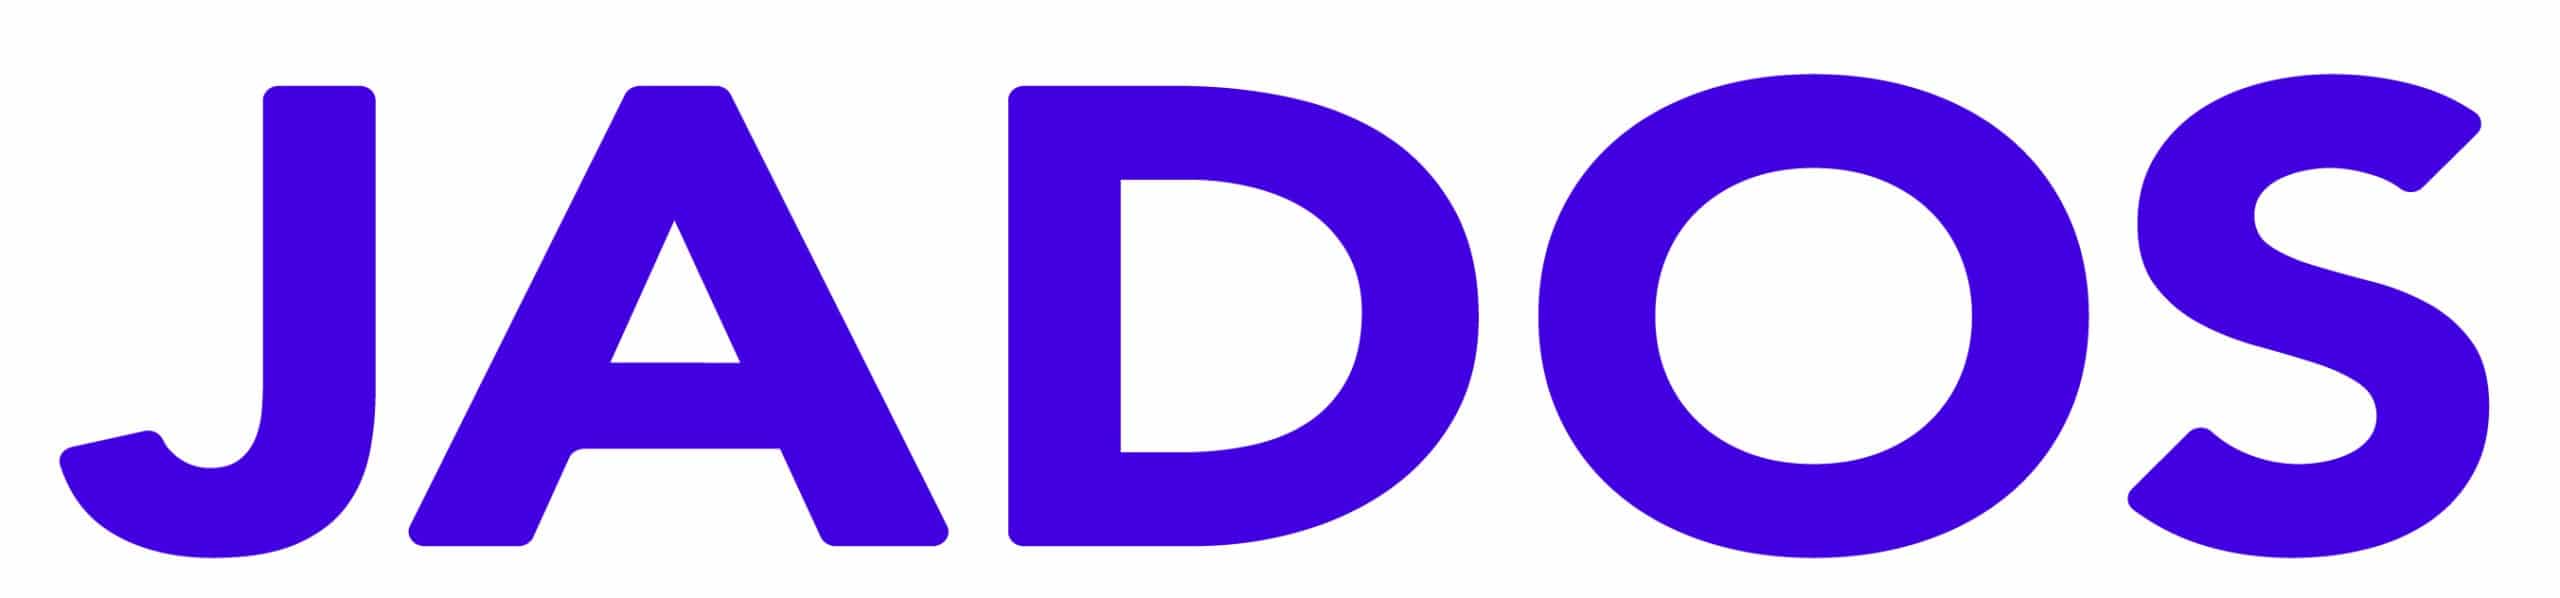 JADOS 2020 Logo